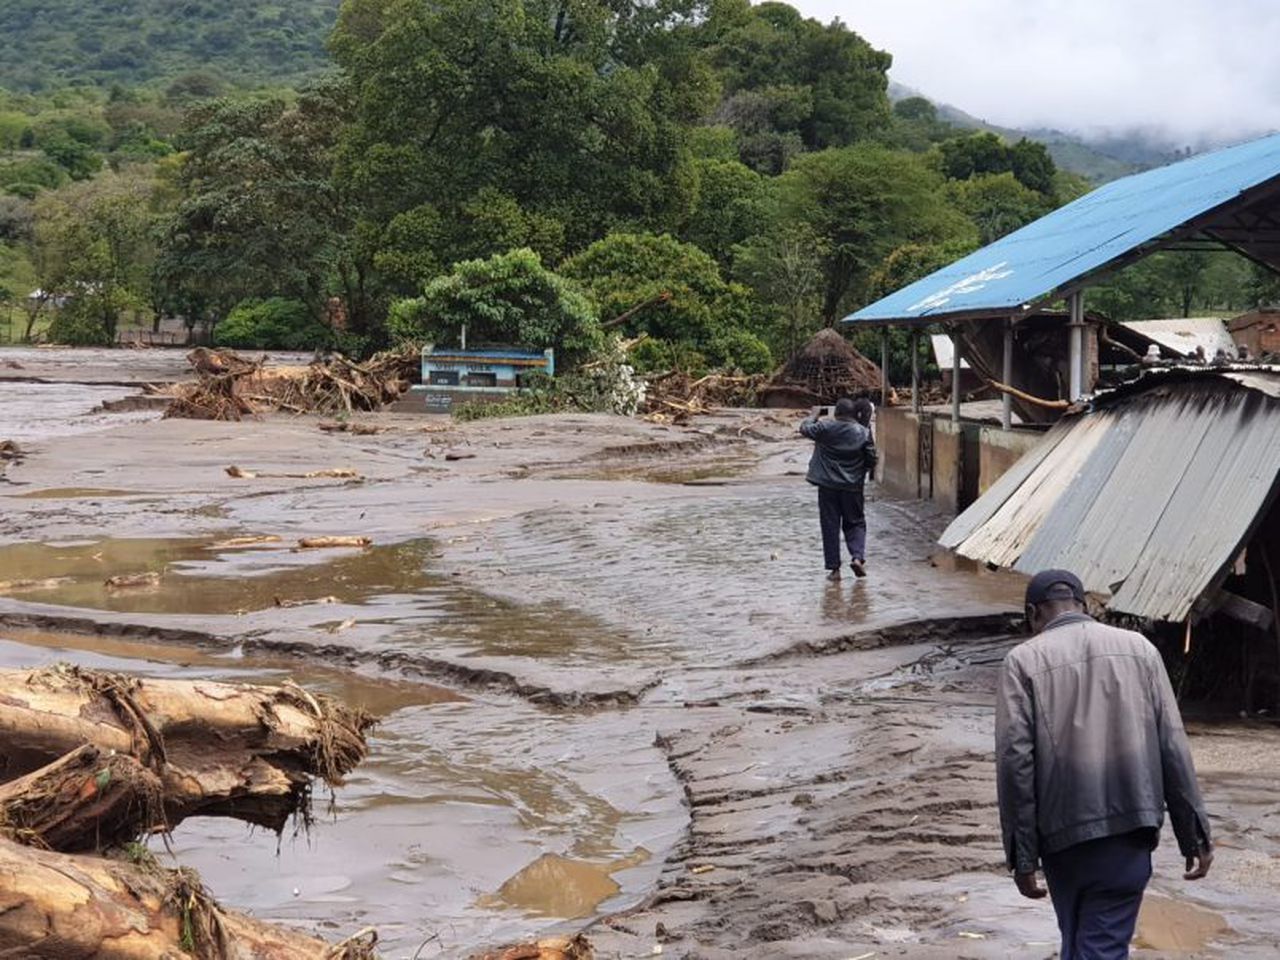 Heavy Rains caused deadly landslides in Kenya, Image via Kenya Red Cross